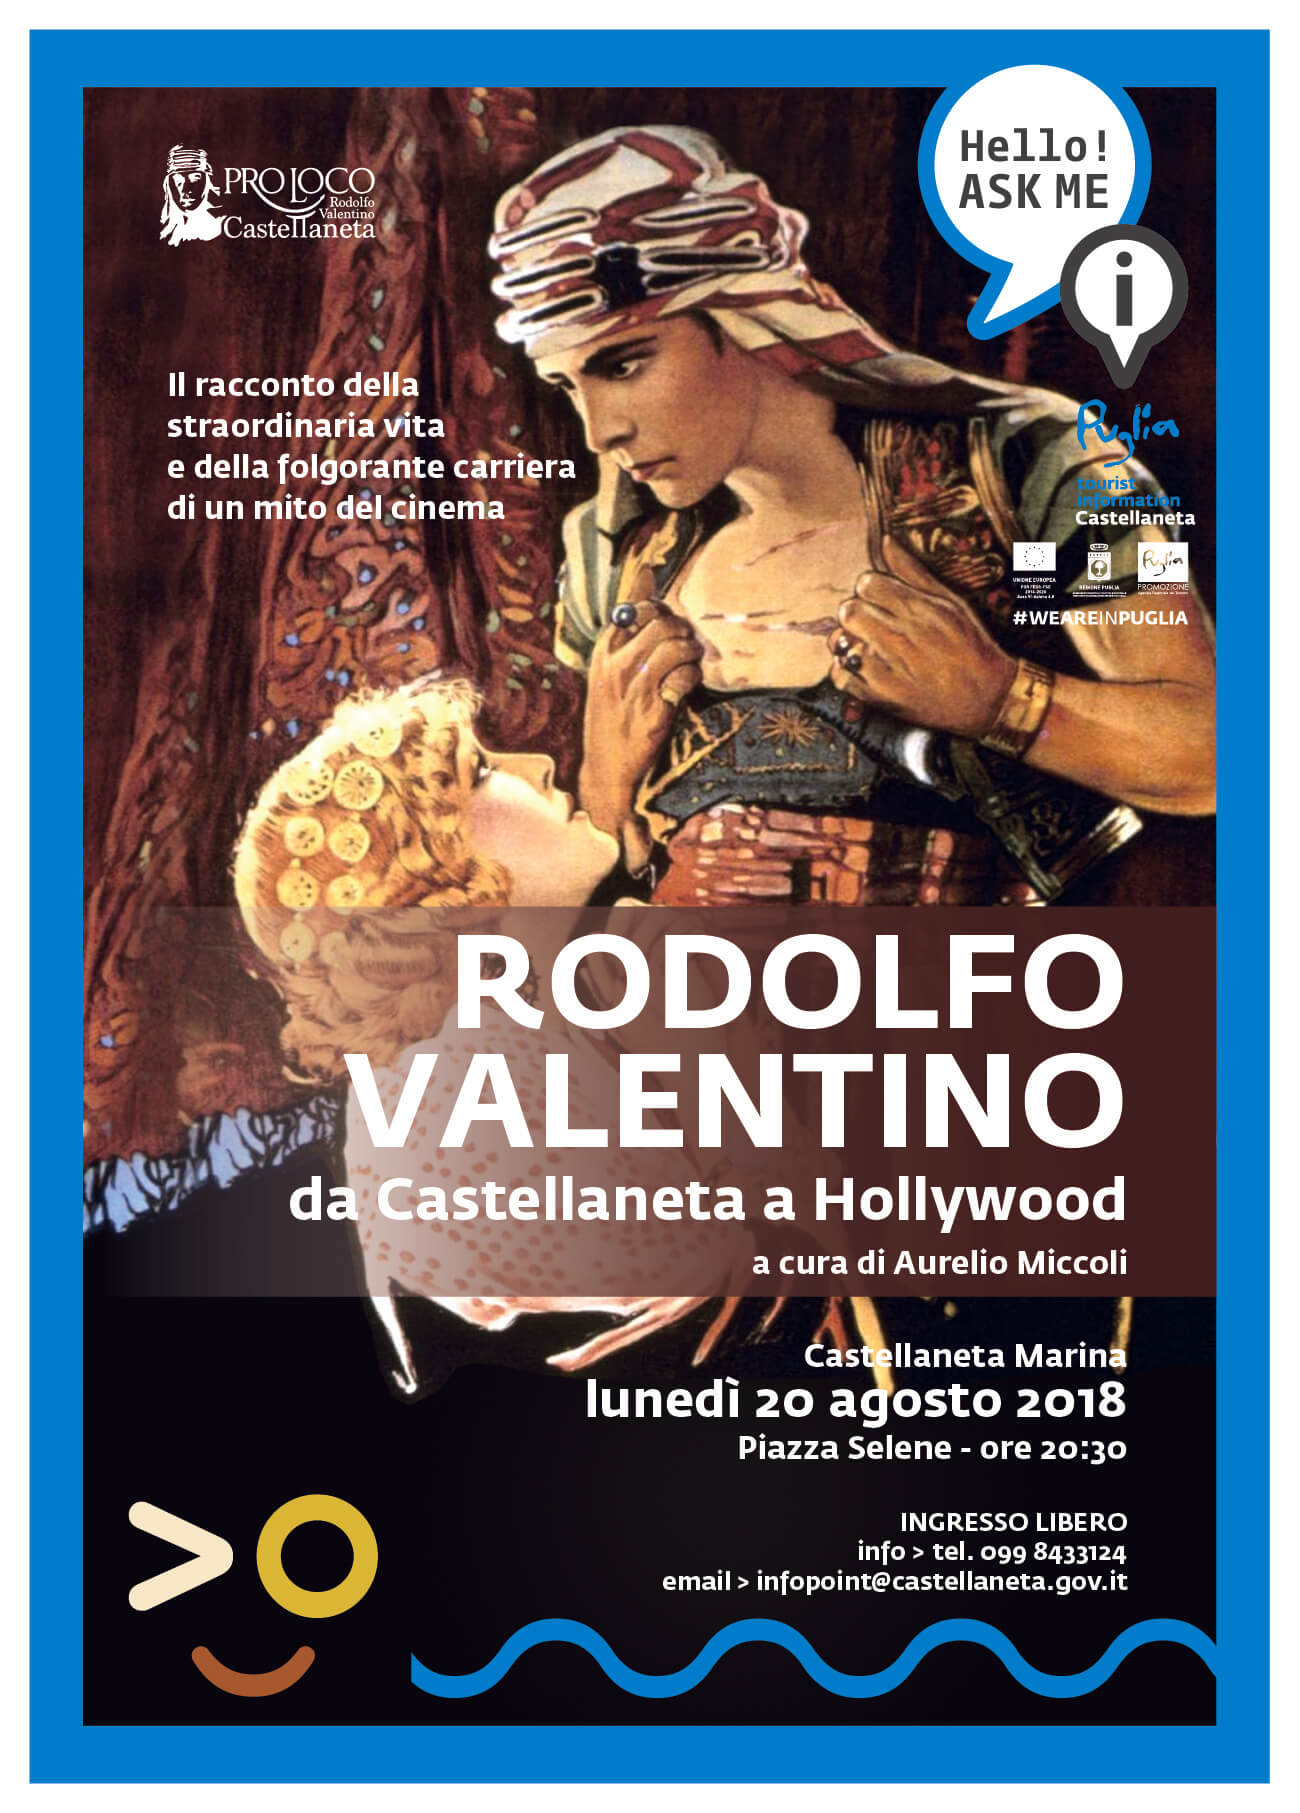 Rodolfo Valentino, da Castellaneta a Hollywood: il racconto della straordinaria vita e della folgorante carriera del Mito